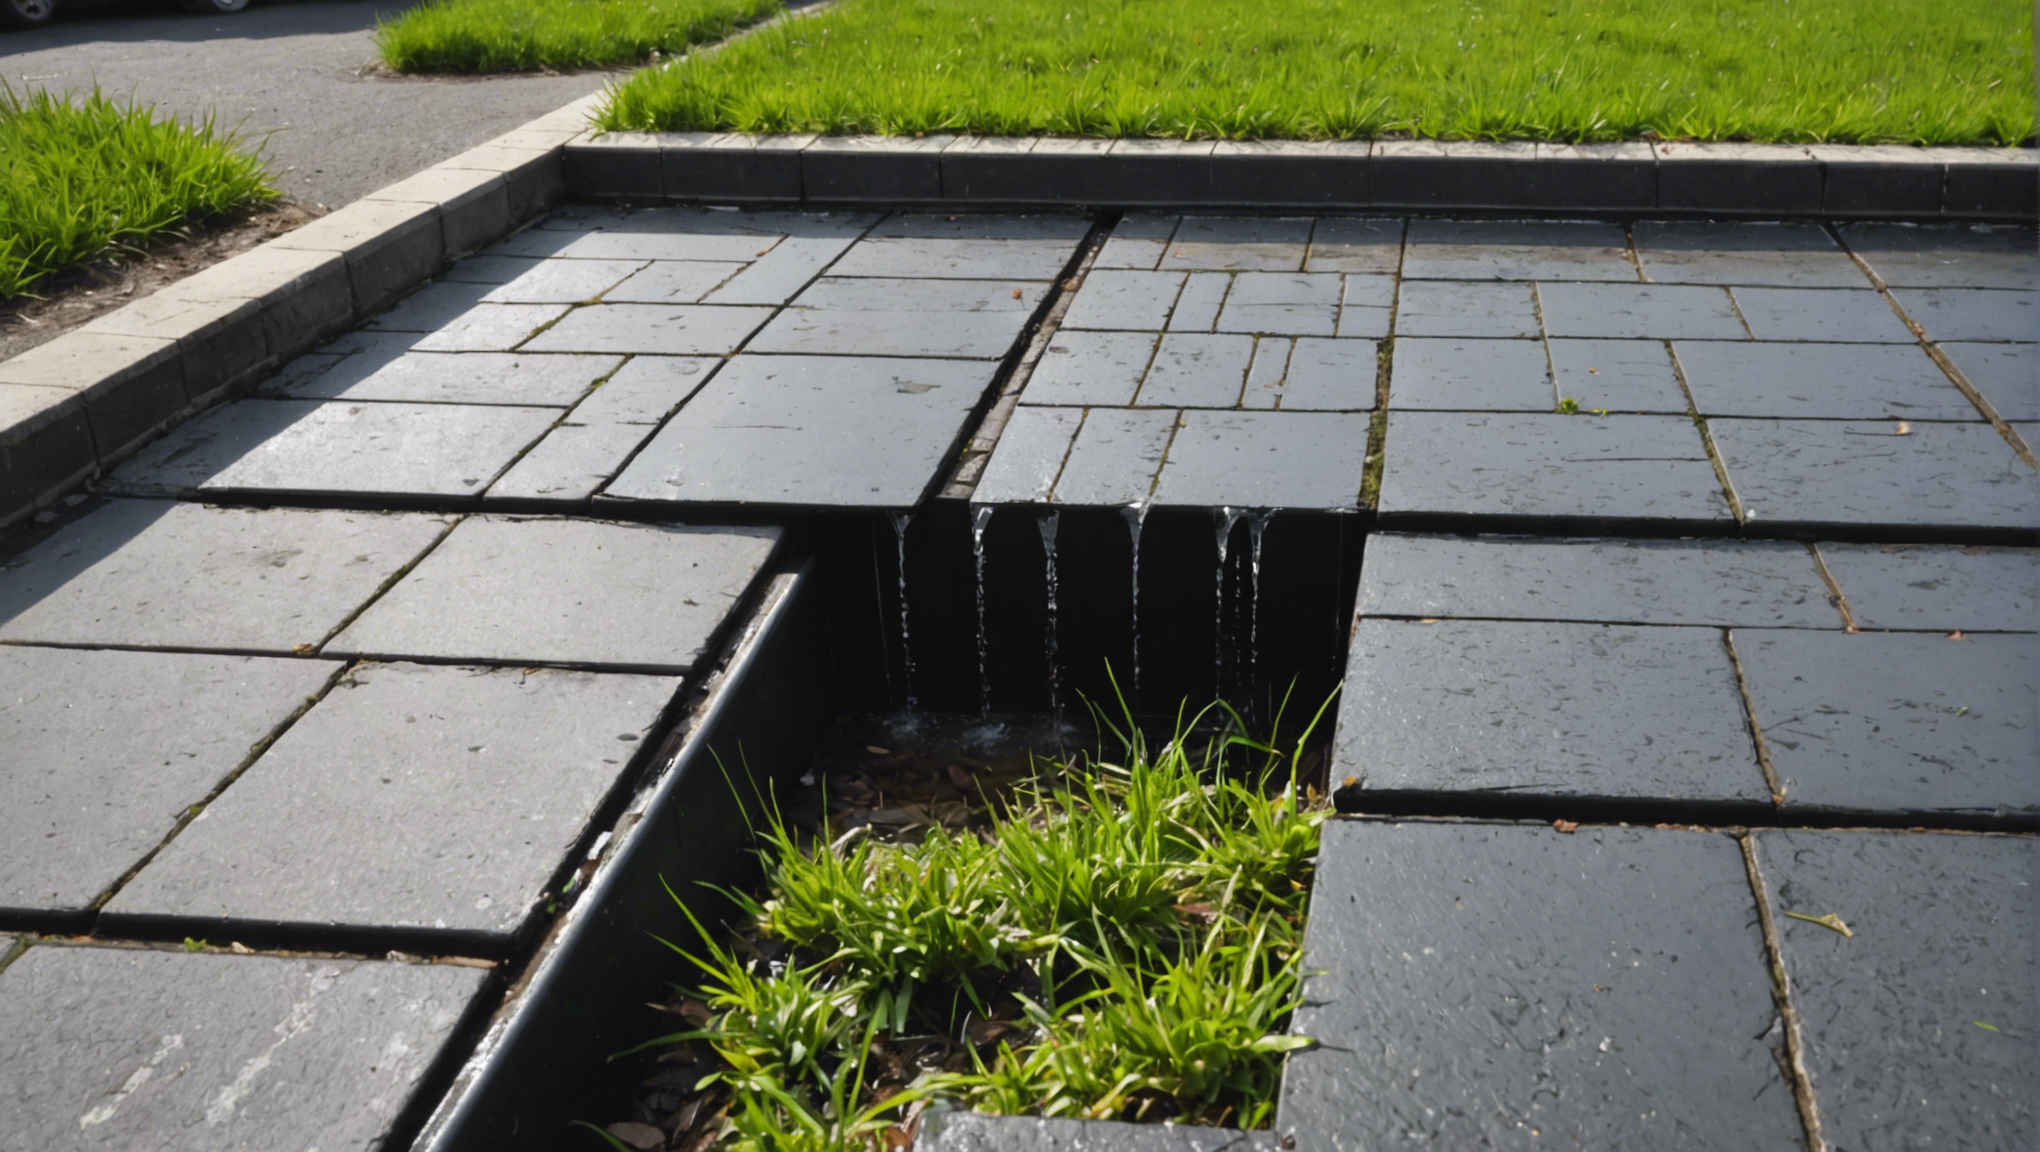 découvrez les nombreux avantages du revêtement de sol extérieur drainant pour embellir et protéger votre espace extérieur tout en favorisant l'écoulement naturel de l'eau.